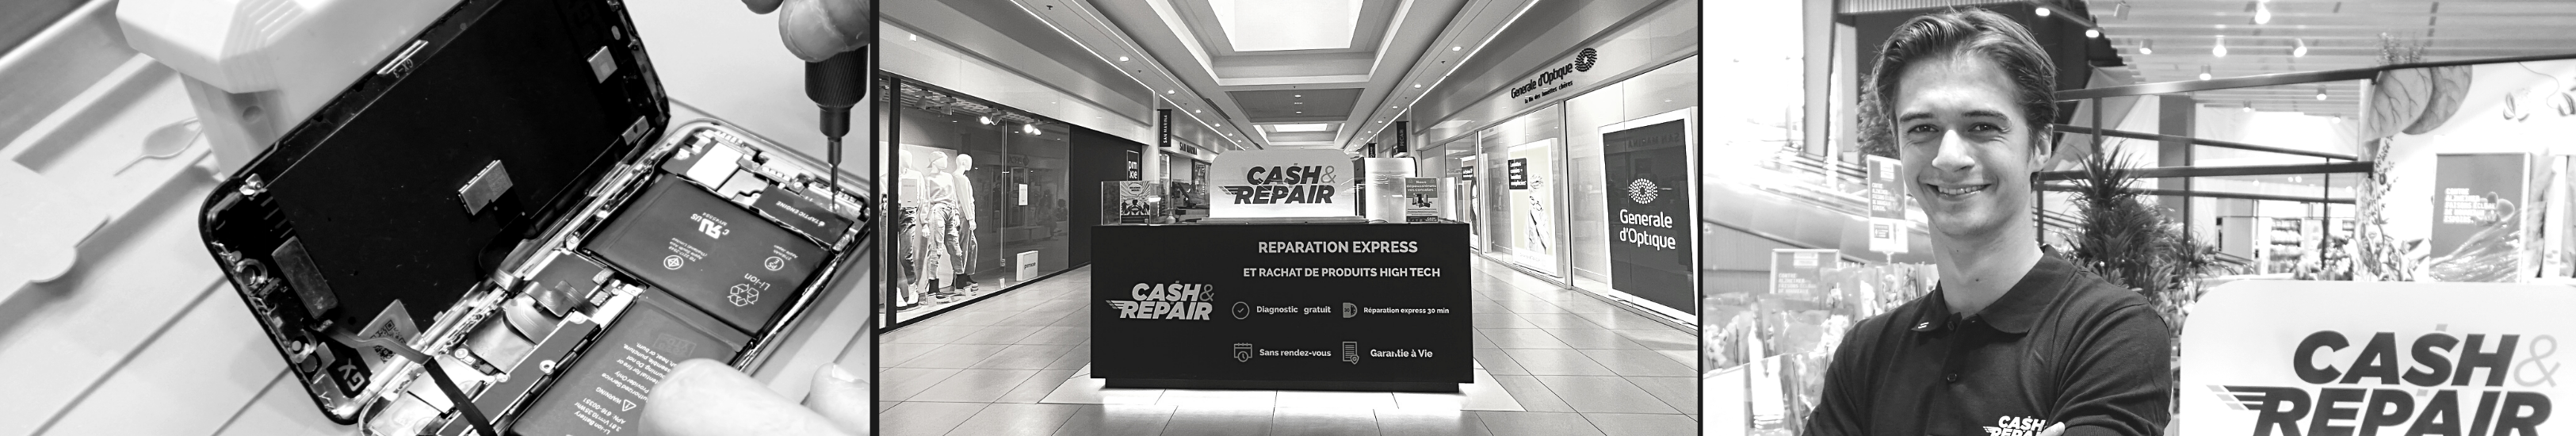 - Atelier de réparation Cash and Repair Laval